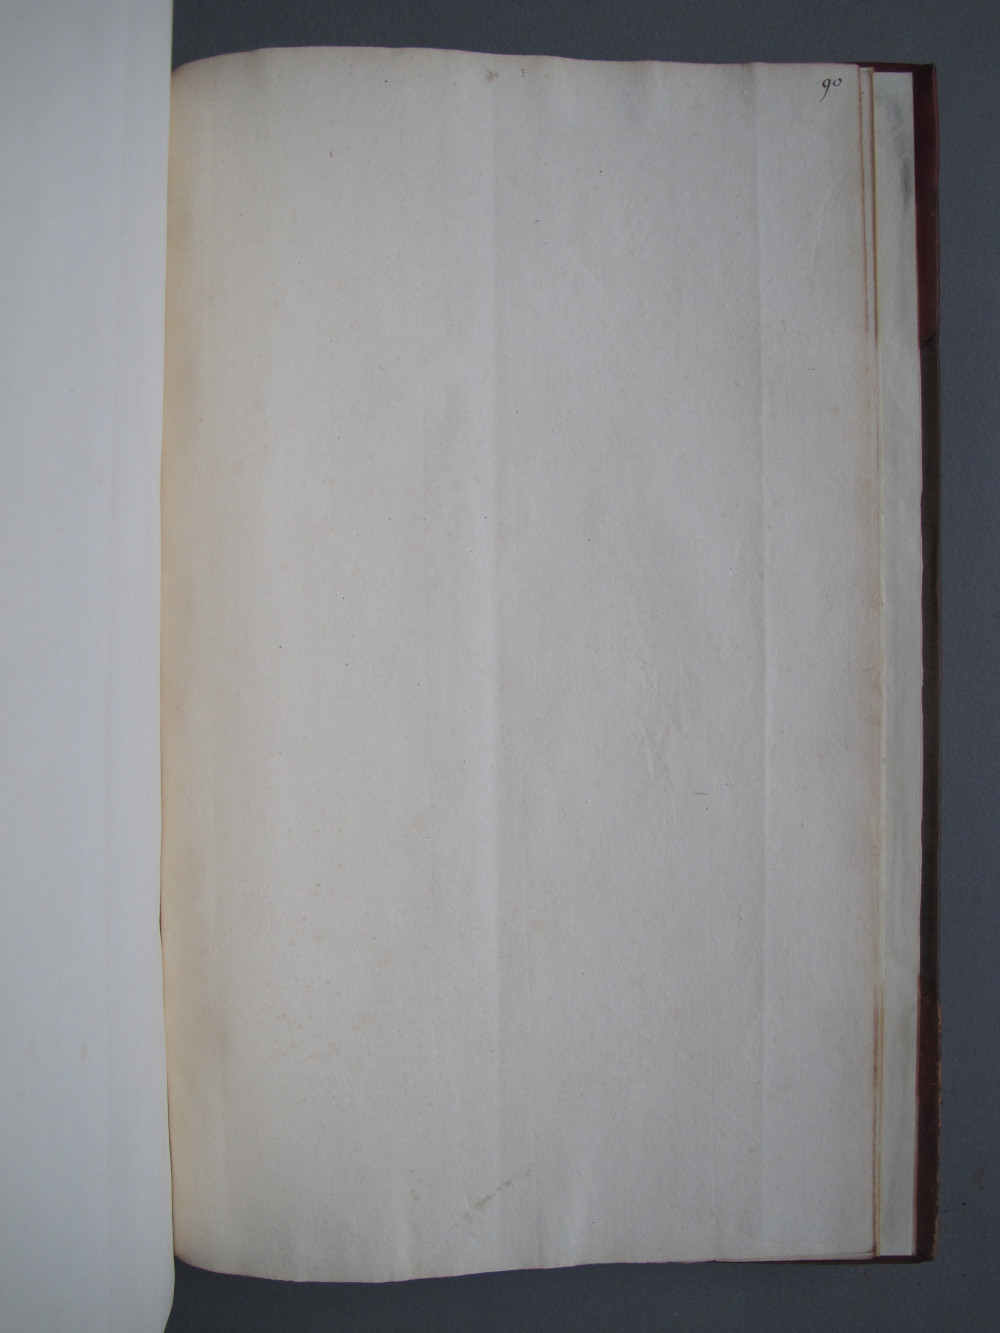 Folio 90 recto